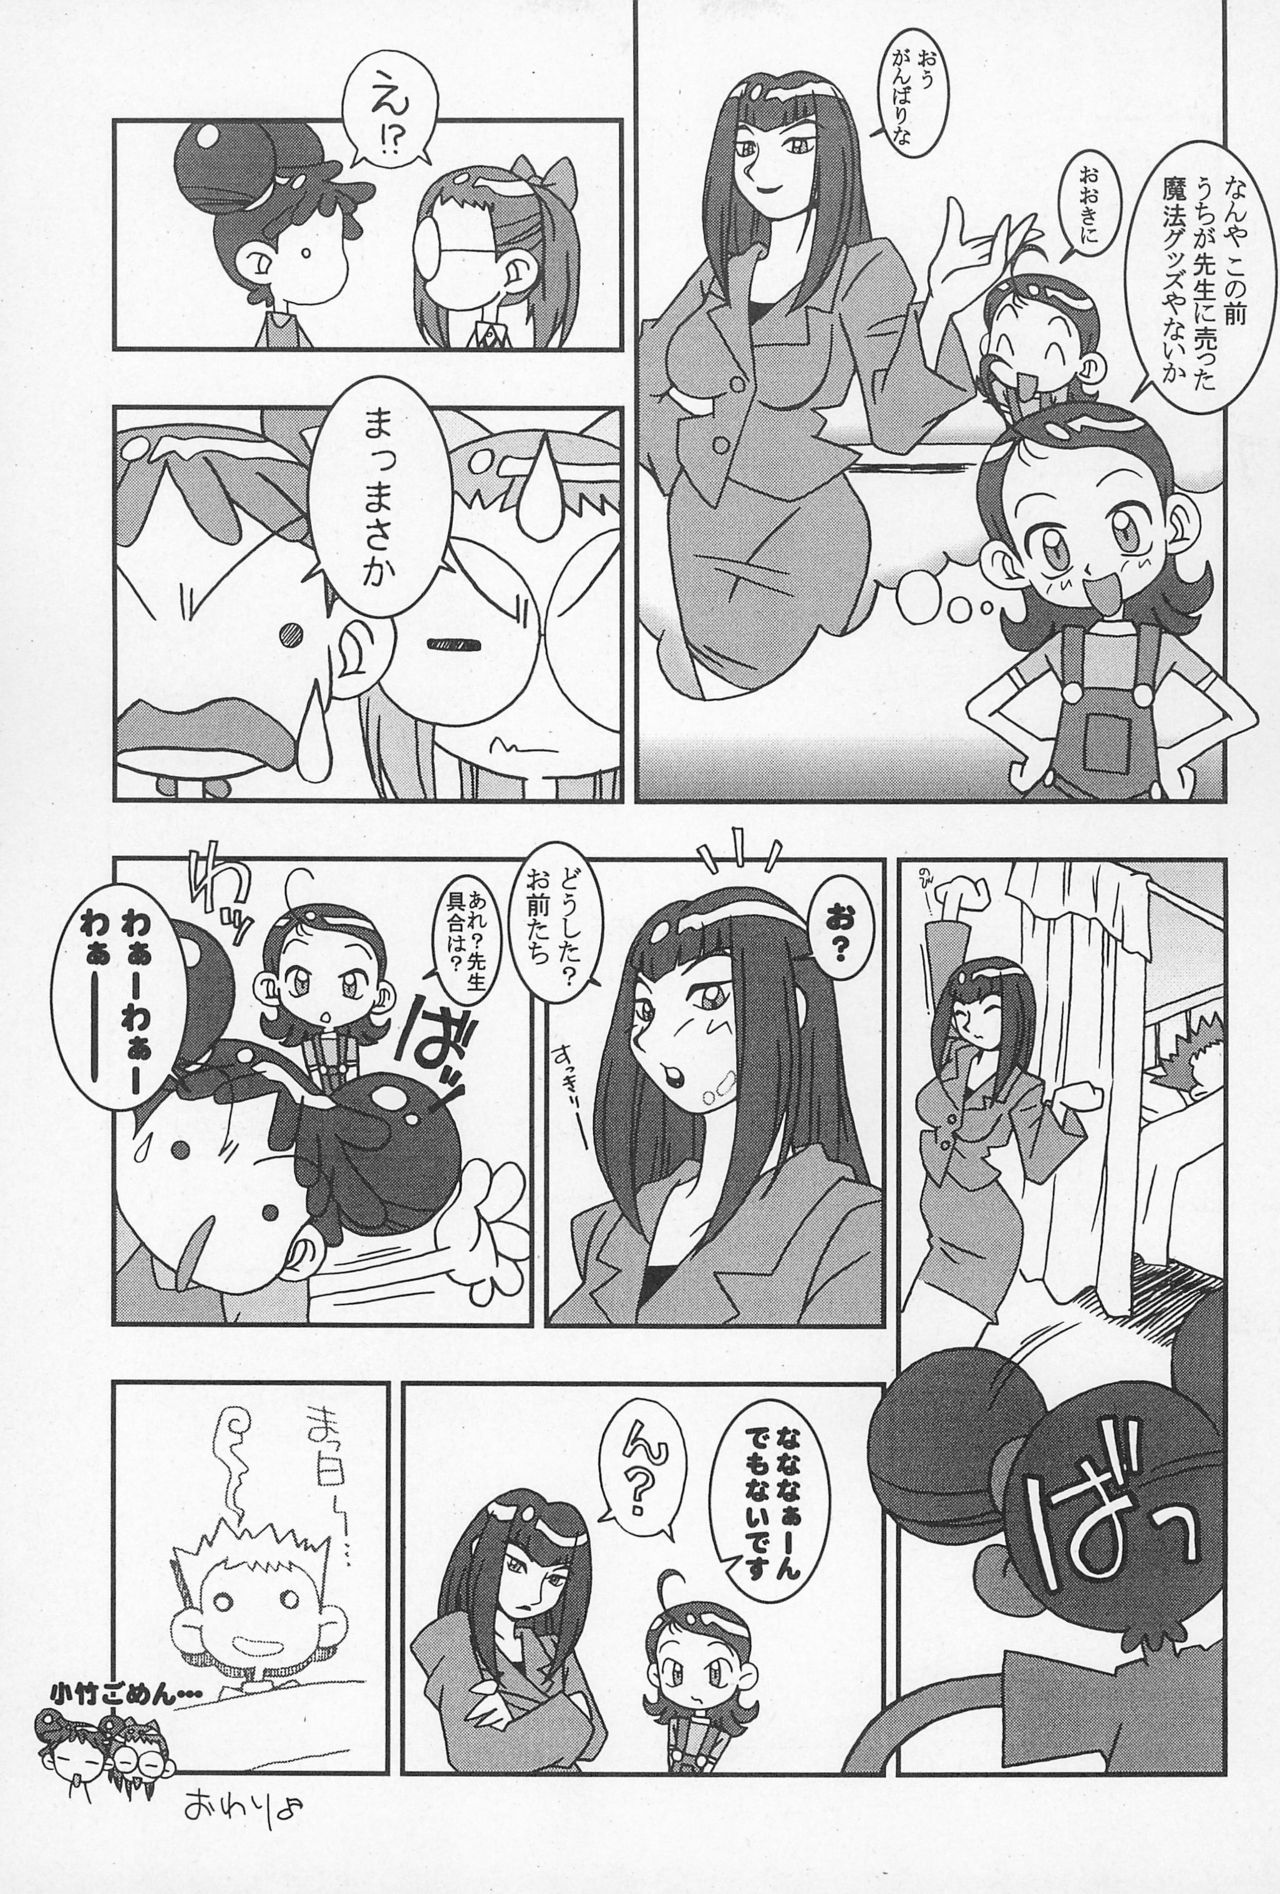 (CR25) [Nekketsu Kouenji Housoukyoku, KENIX (Katori Youichi, Ninnin!)] Doremi Fa So La Si Do (Ojamajo Doremi) page 35 full